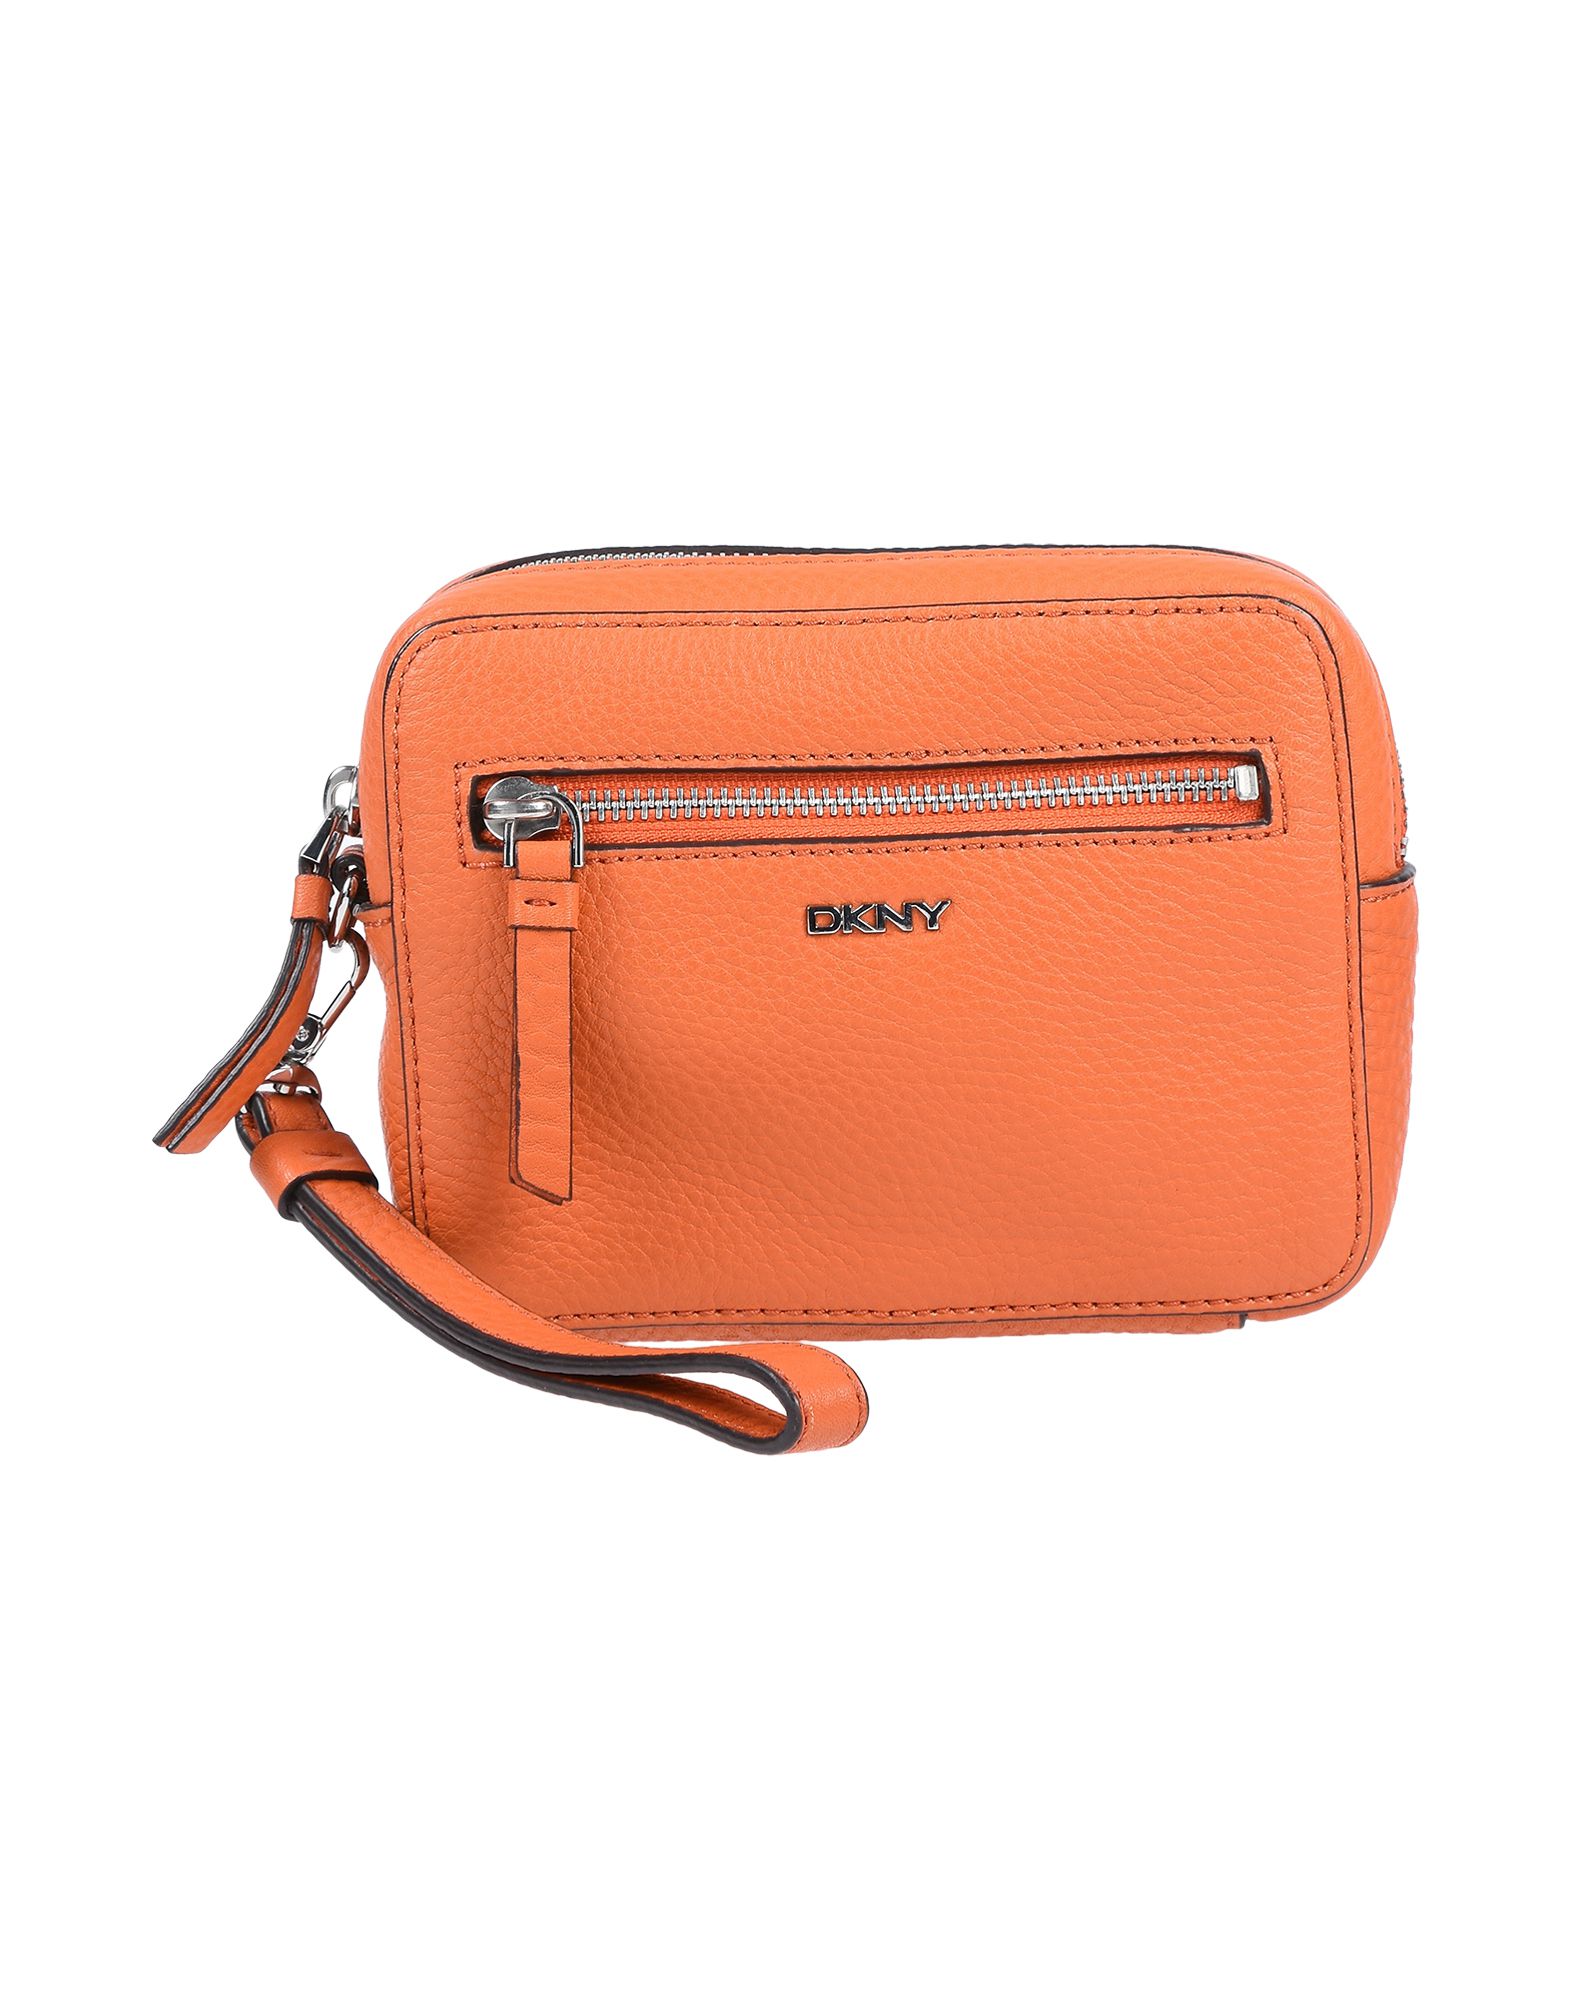 《送料無料》DKNY レディース ハンドバッグ オレンジ 牛革 100%